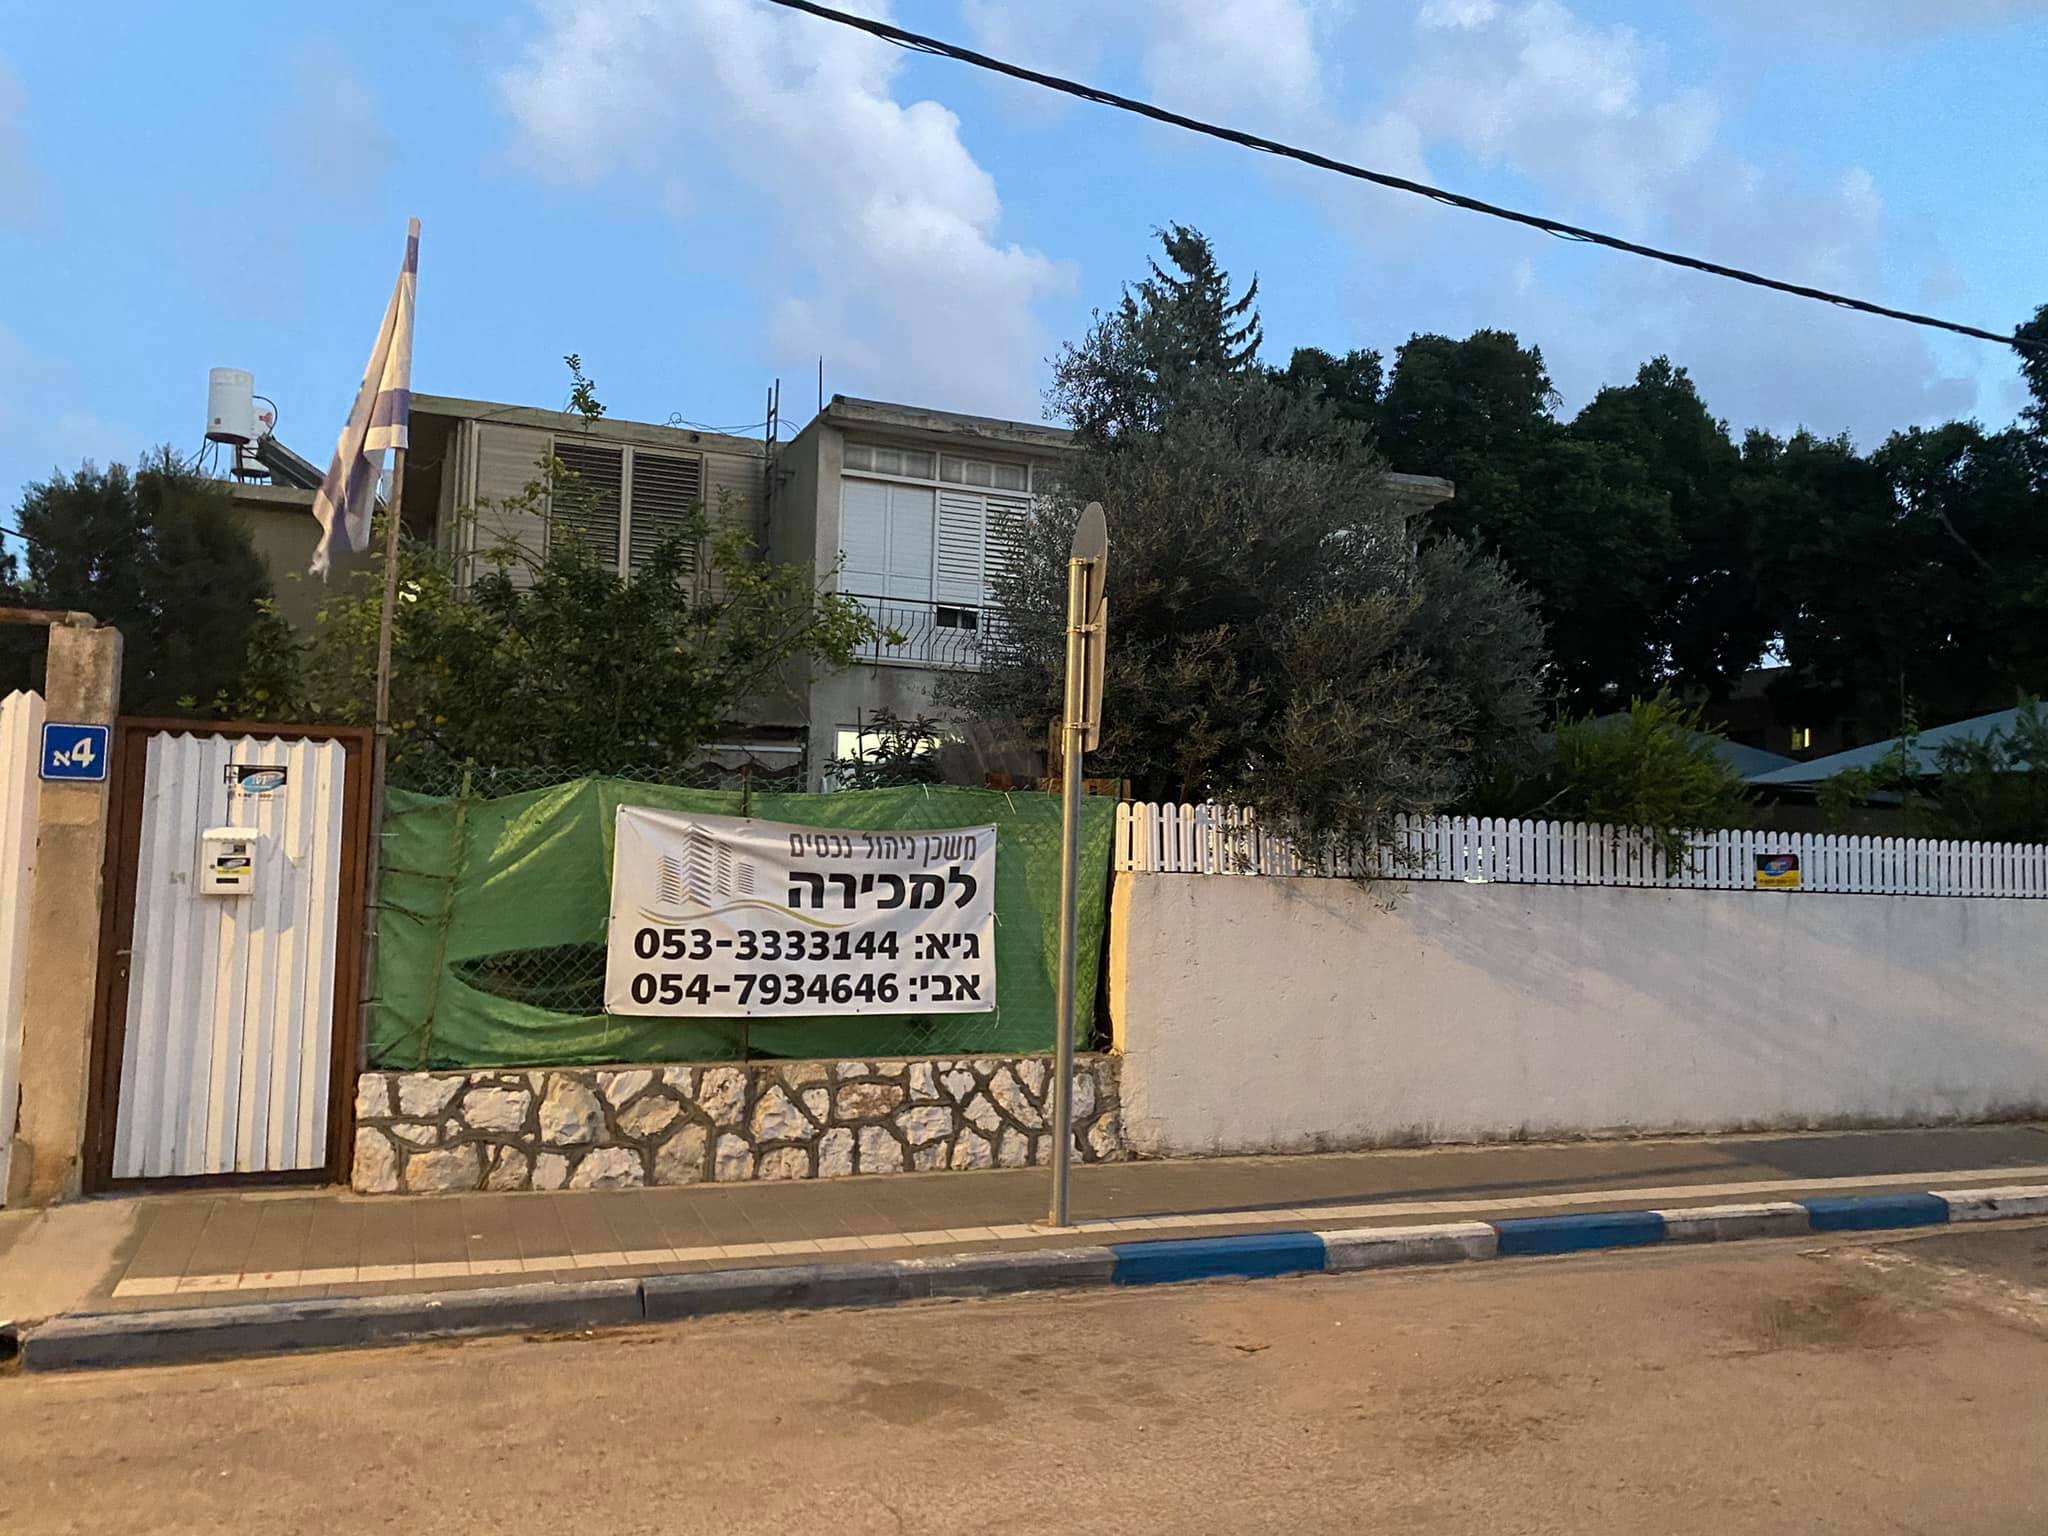 דירה למכירה ברחוב מונאש 4 - יד אליהו, תל אביב